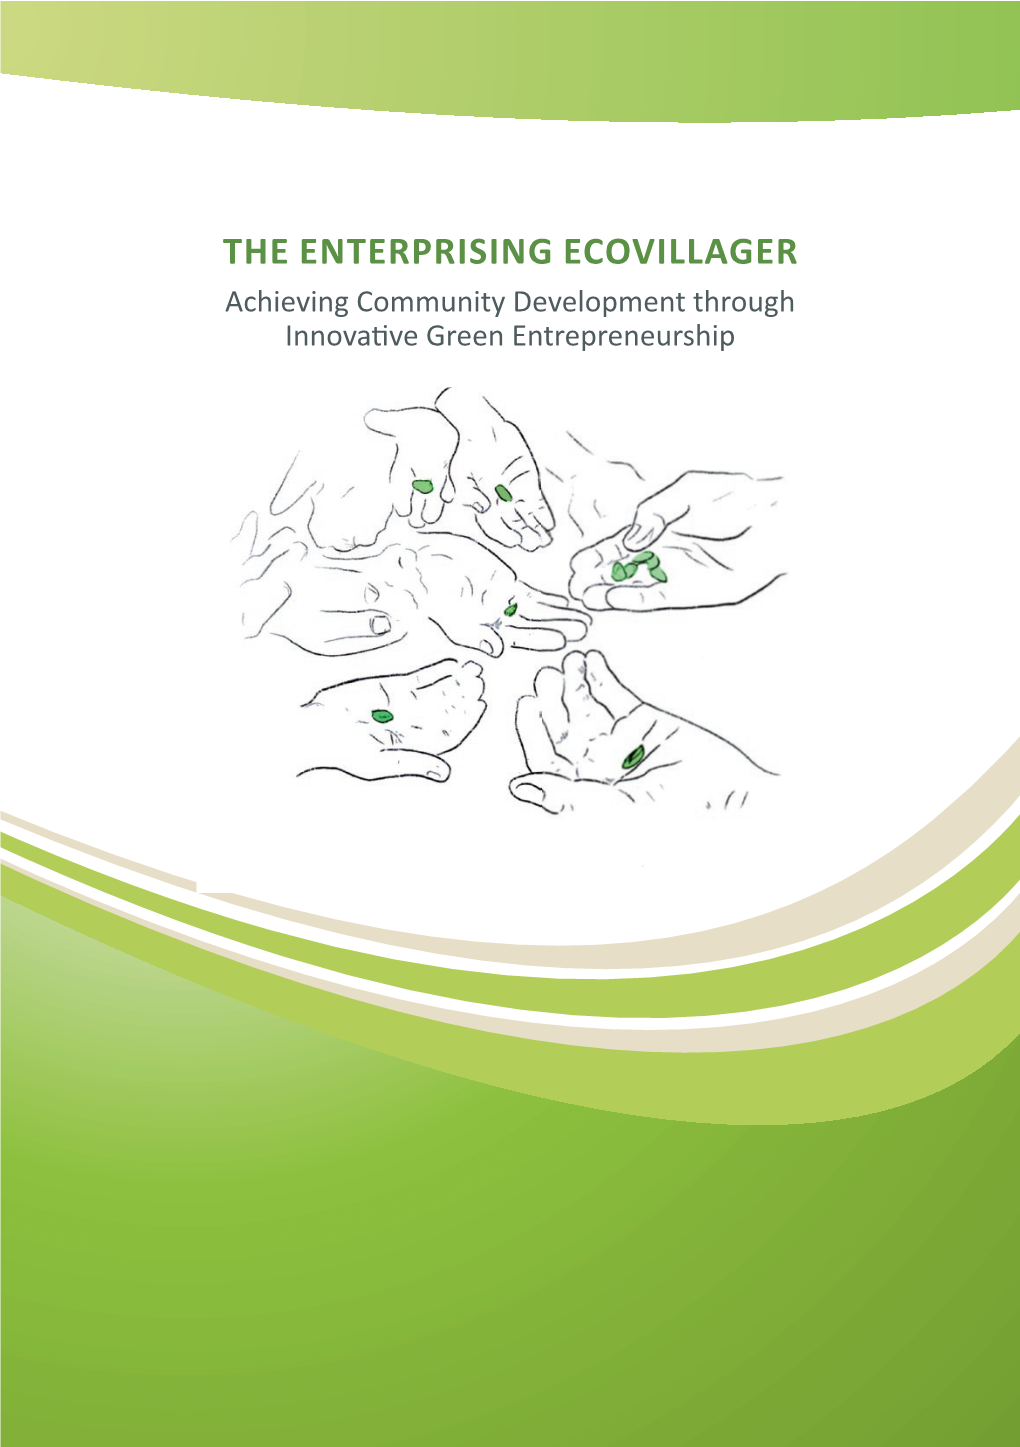 THE ENTERPRISING ECOVILLAGER Achieving Community Development Through Innovati Ve Green Entrepreneurship Lead Partner